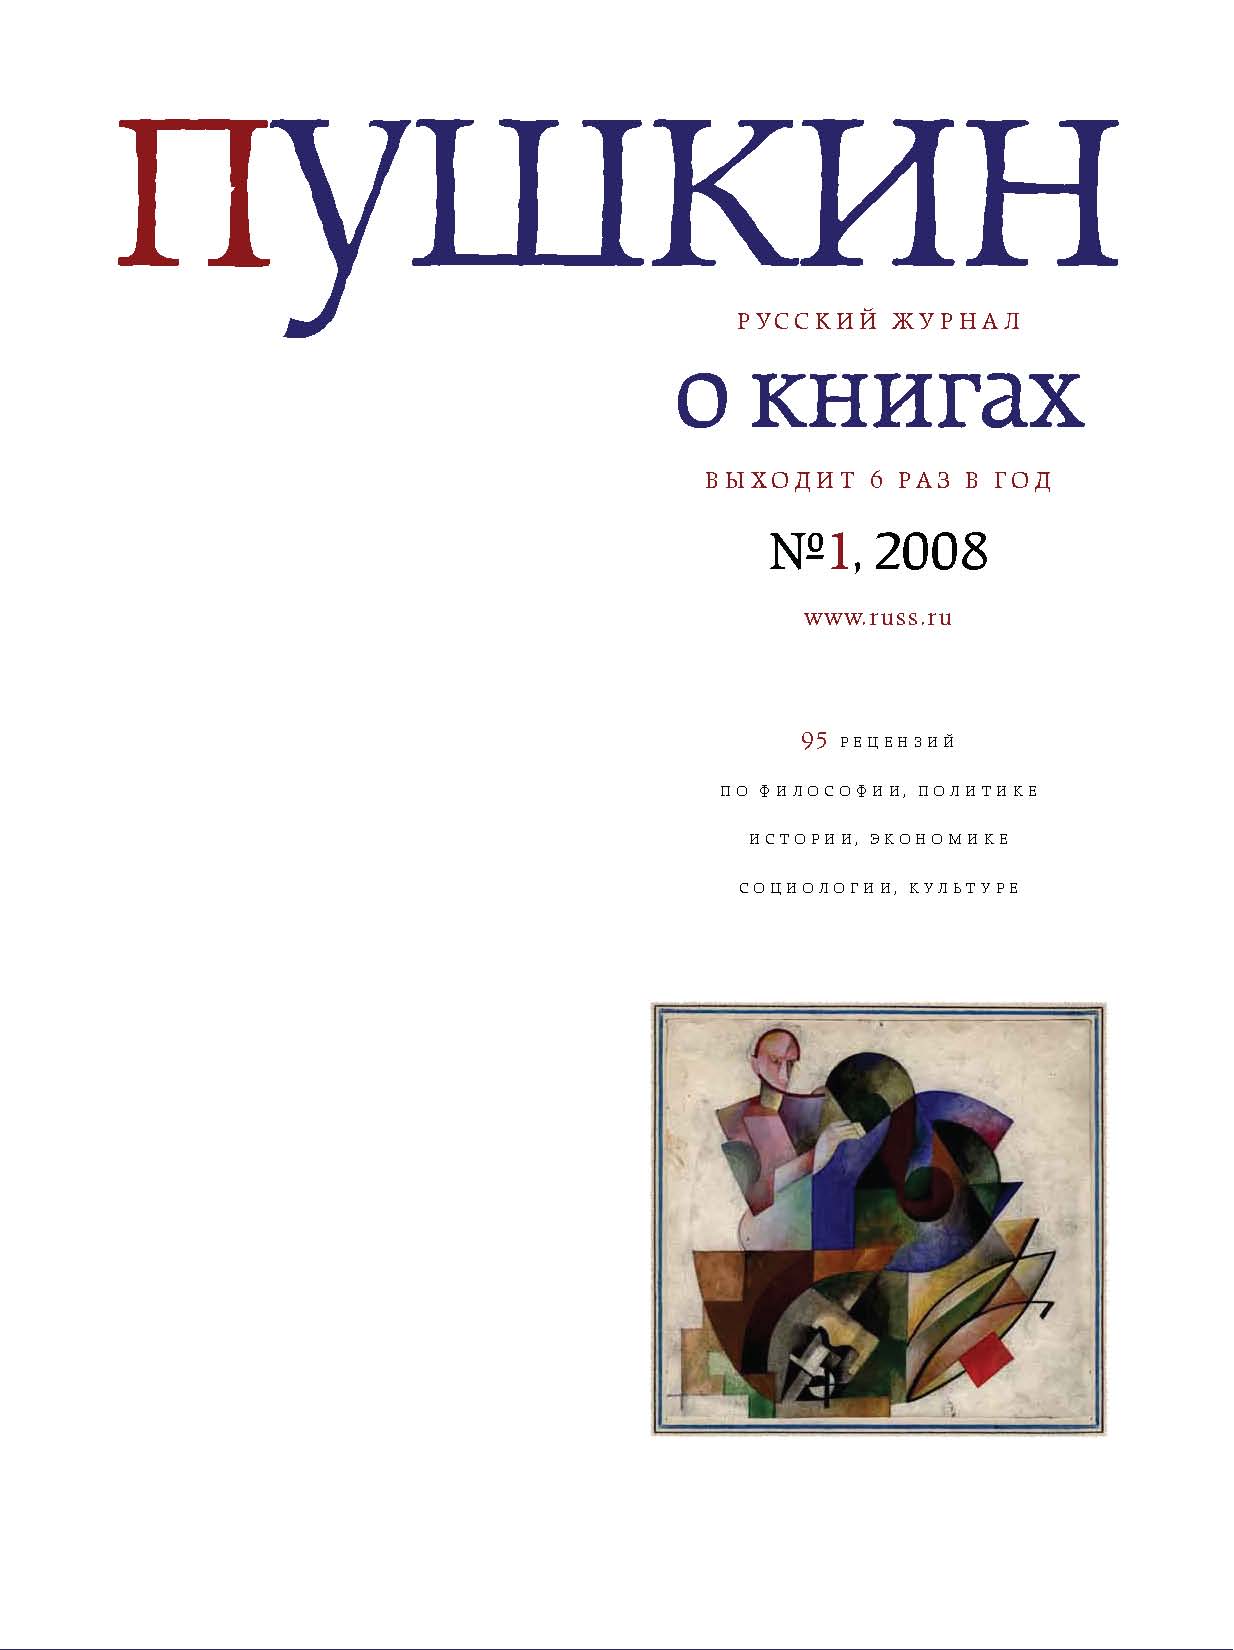 Пушкин. Русский журнал о книгах №01\/2008